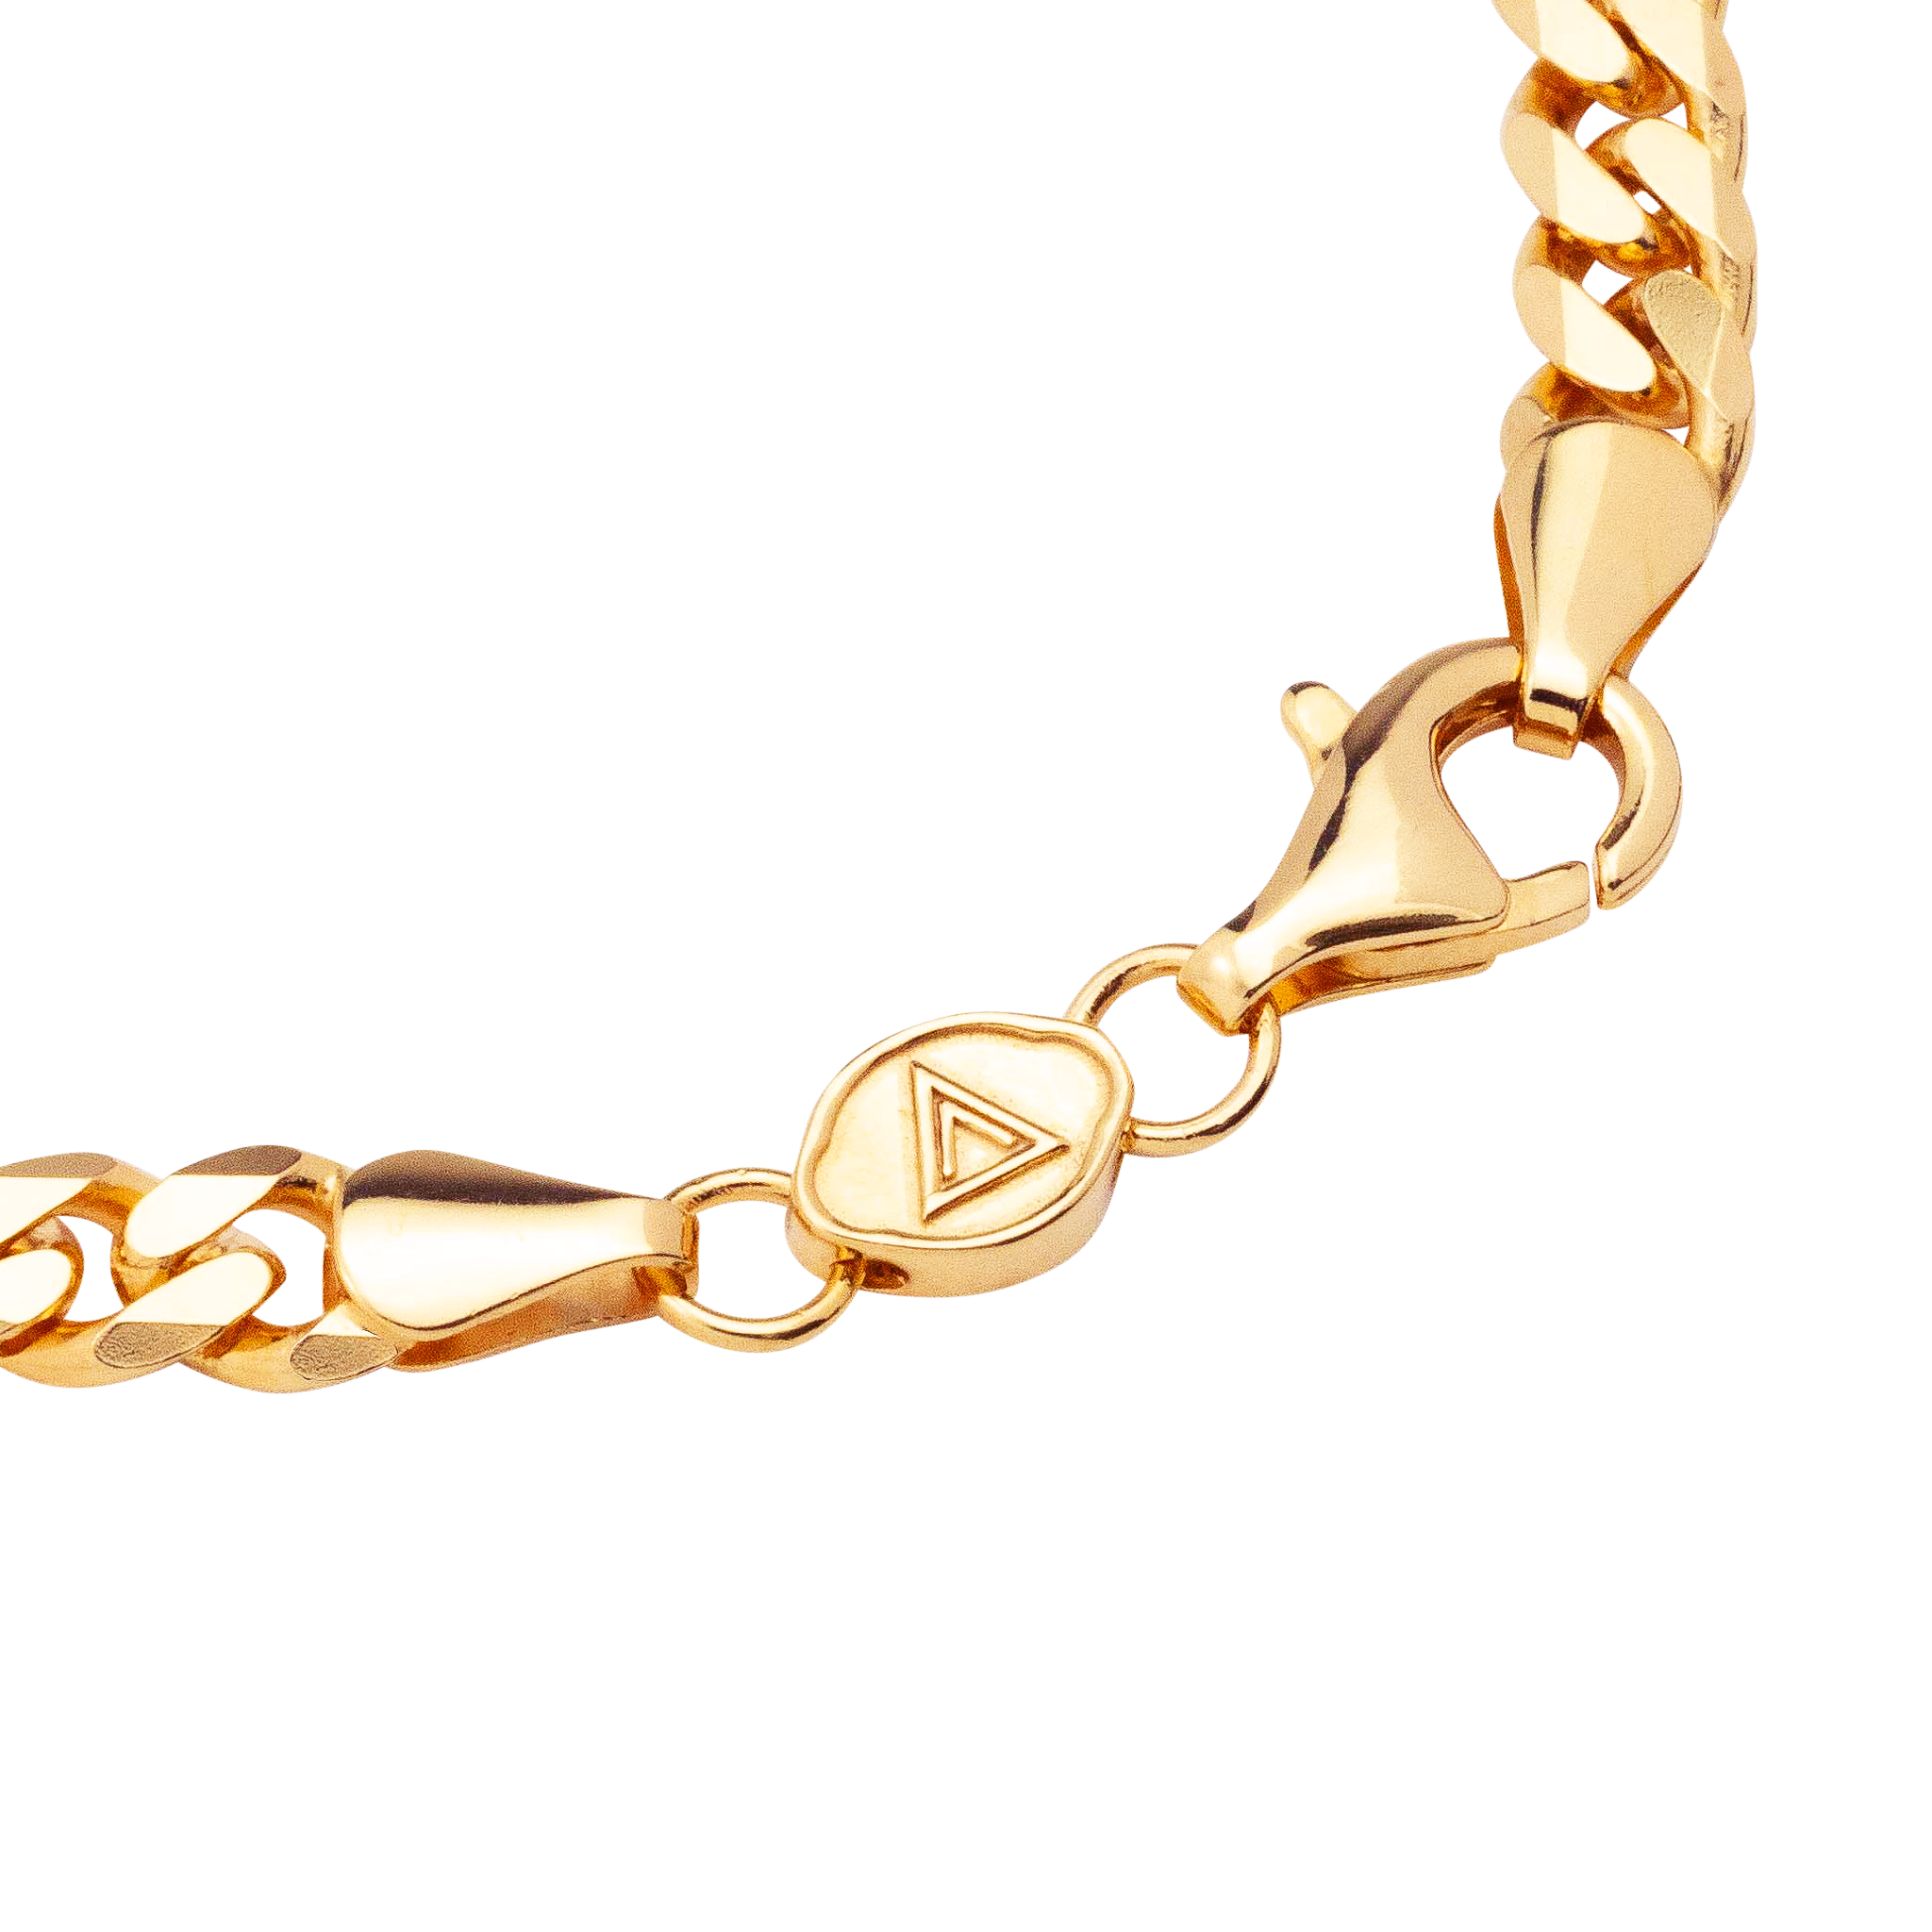 Claasical indo Men's Fashion Bracelet BR-129 – Rudraksh Art Jewellery